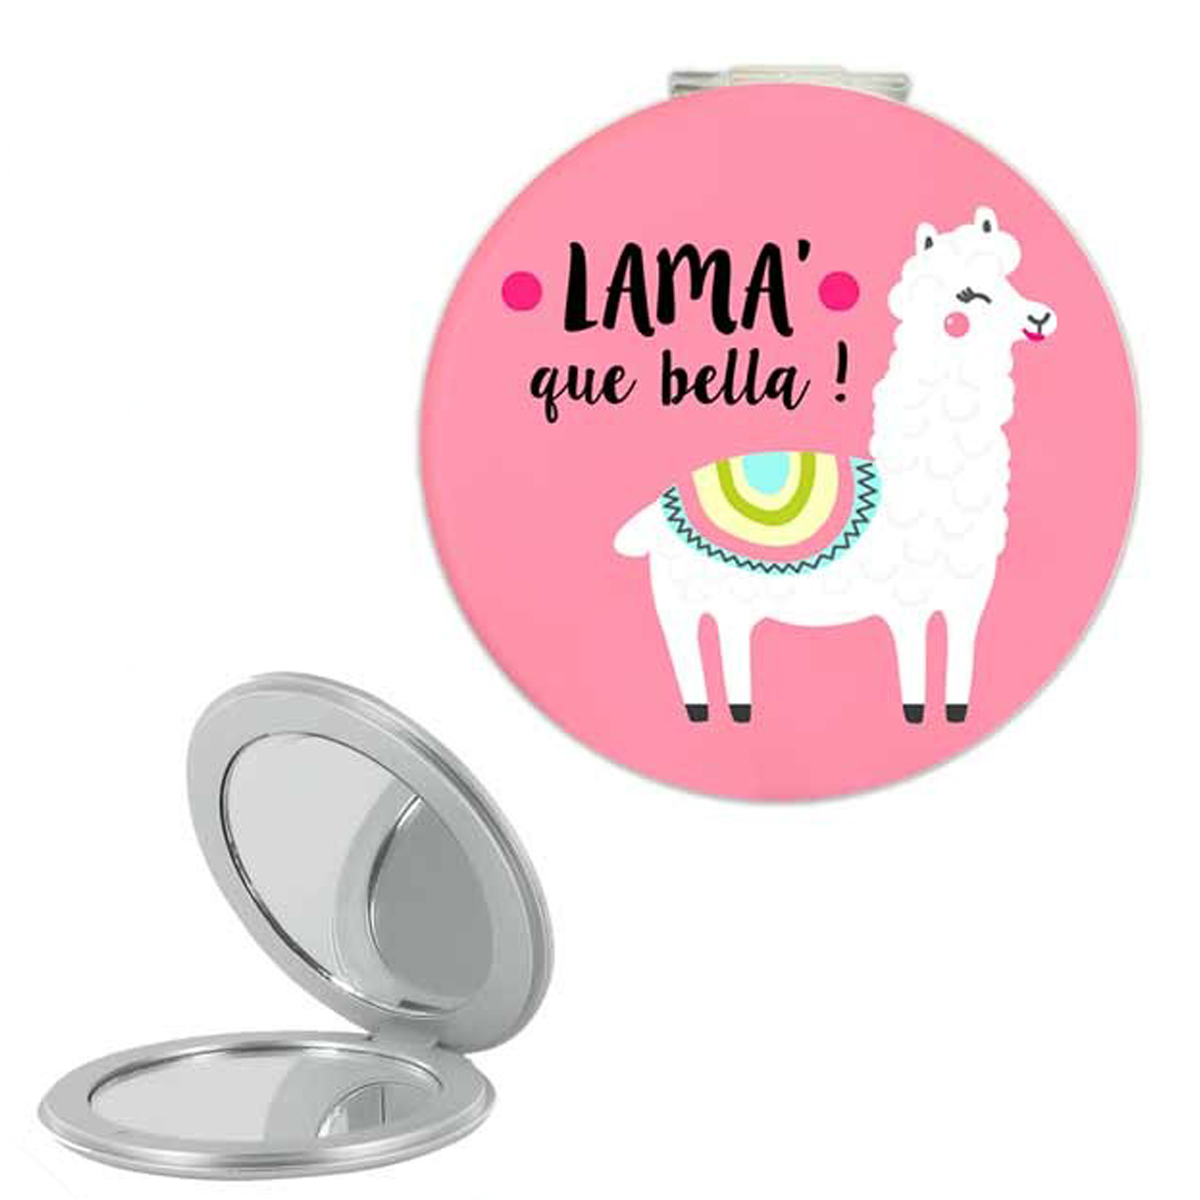 Miroir de poche \'Lama Mania\' rose (Lama\' que bella !) - 6 cm - [Q0865]